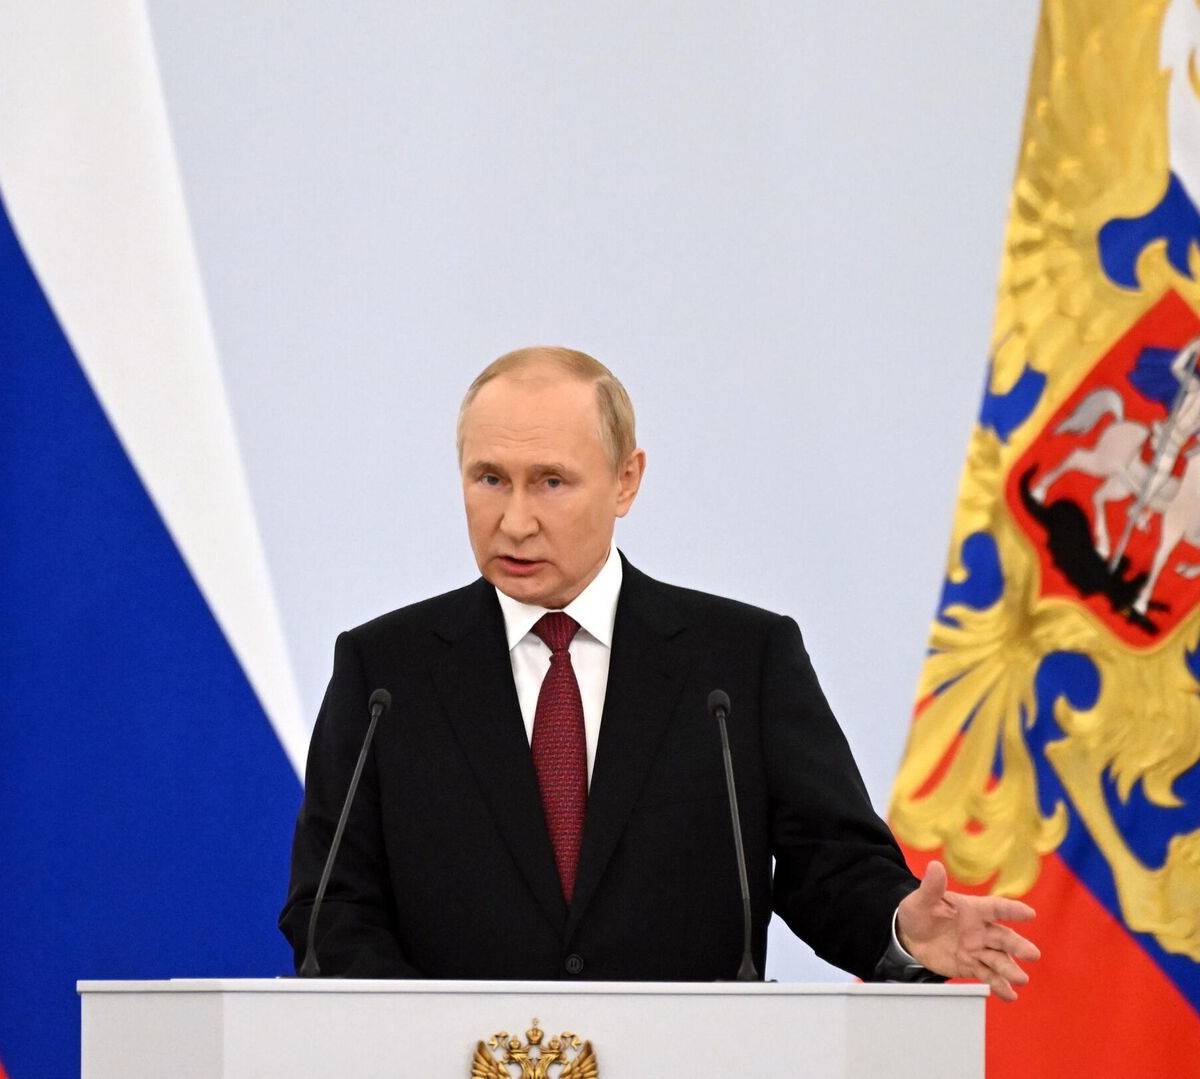 Каждое слово – приговор: почему в США боятся показывать речь Путина